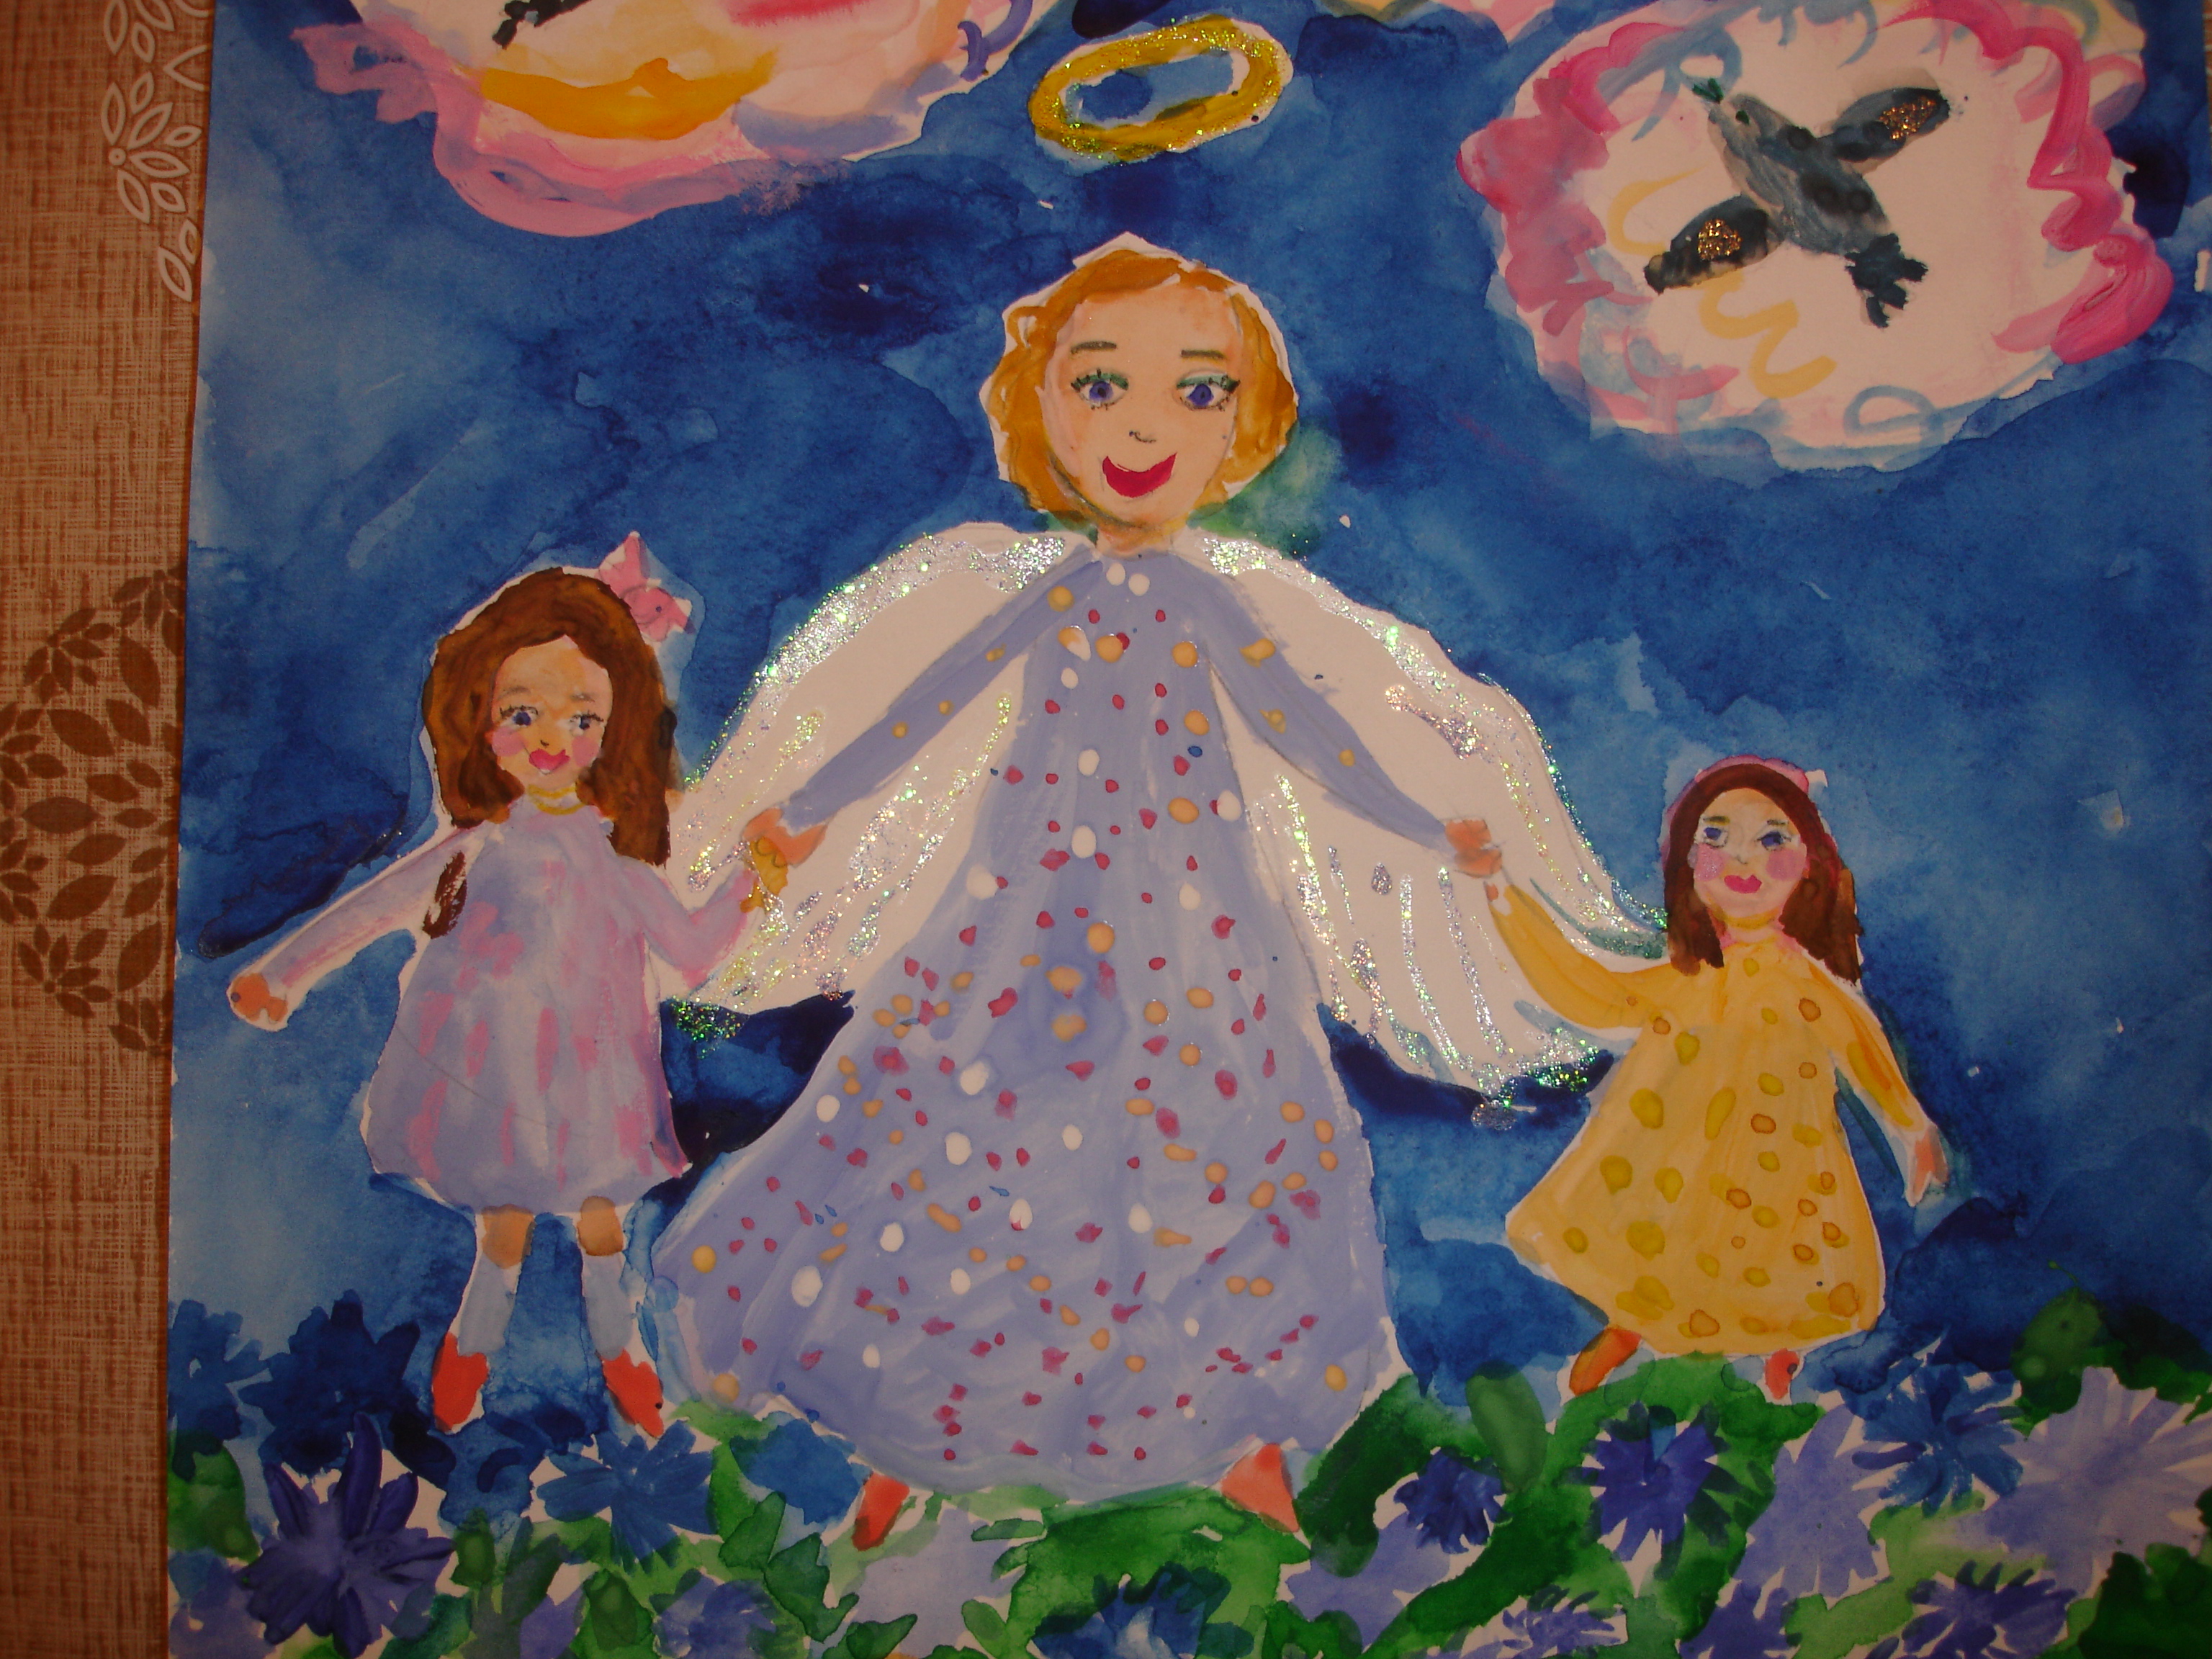 Конкурс детских рисунков мамочка мой ангел